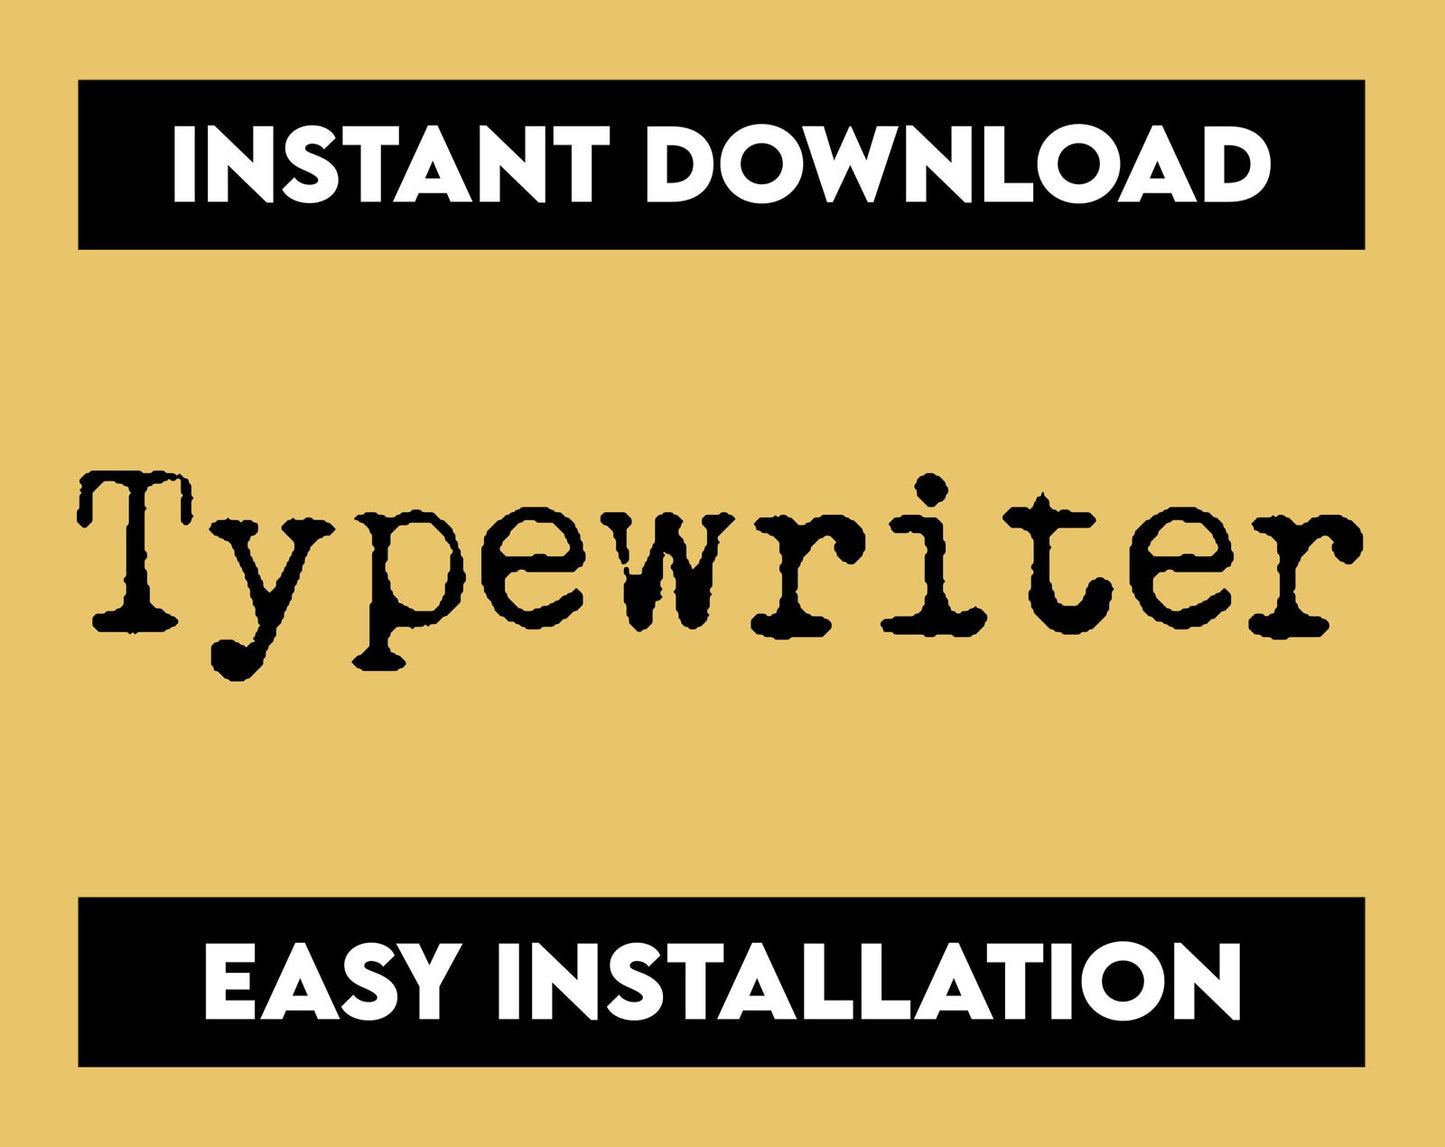 Typewriter Font - Trustful Design